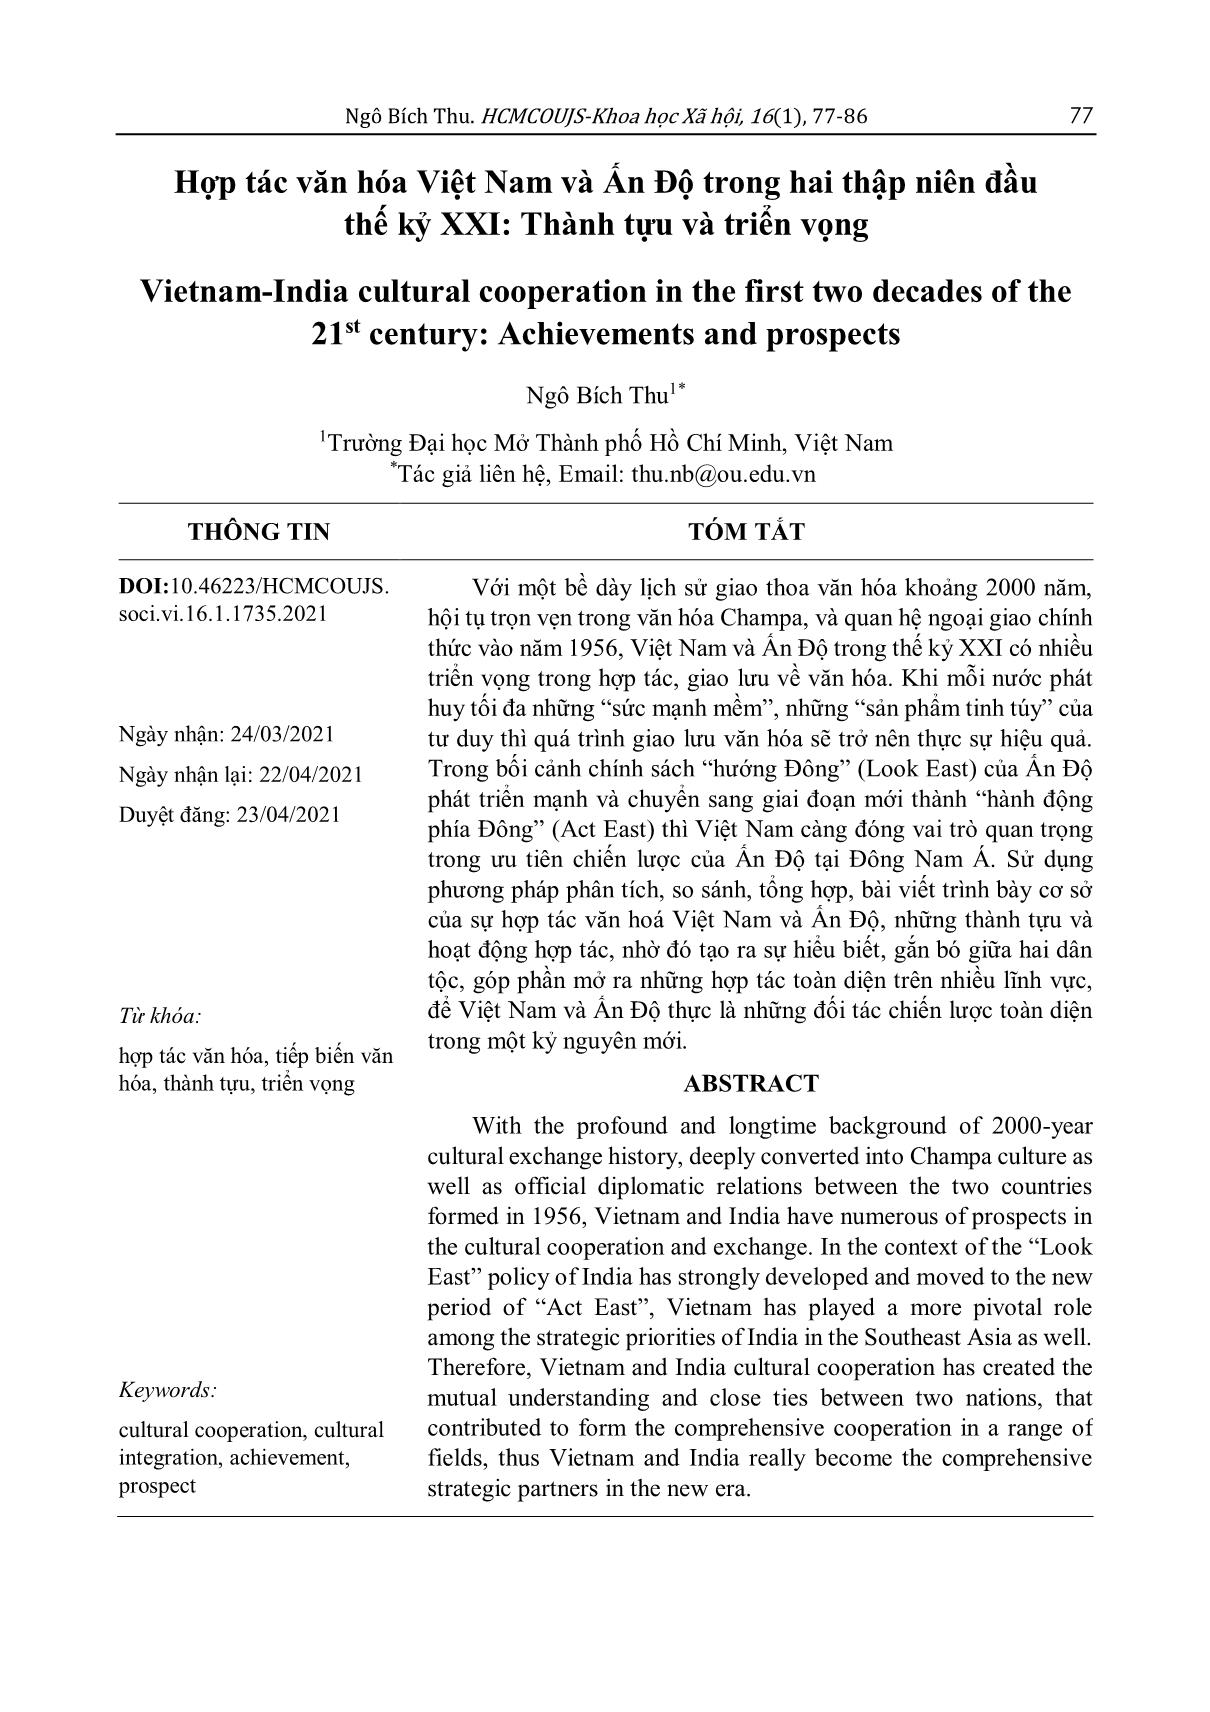 Hợp tác văn hóa Việt Nam và Ấn Độ trong hai thập niên đầu thế kỷ XXI: Thành tựu và triển vọng trang 1